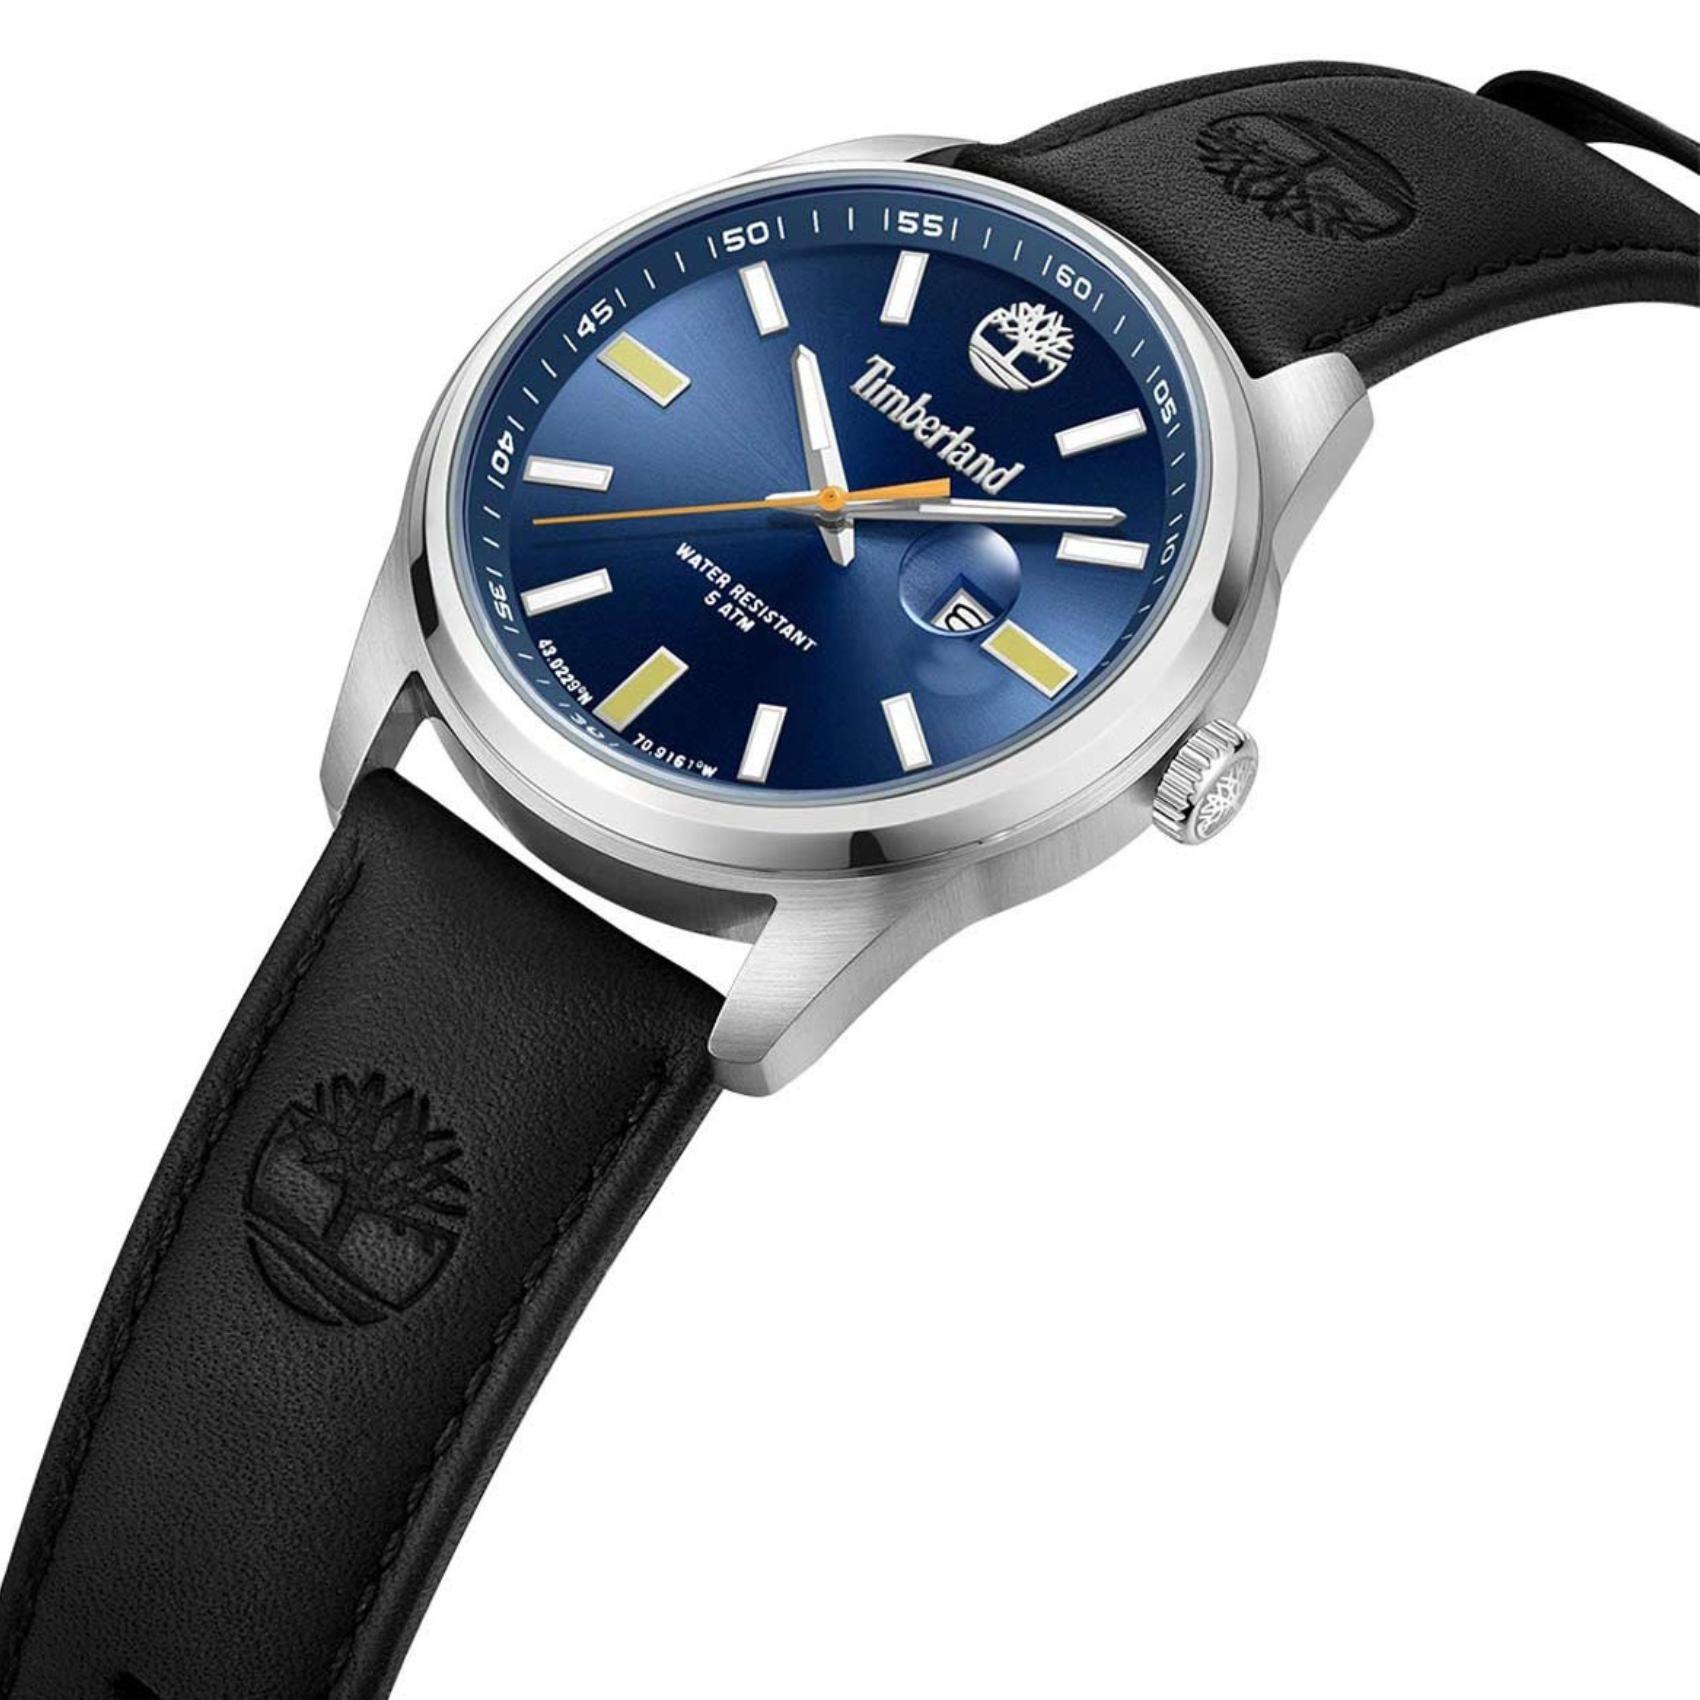 Αντρικό ρολόι Timberland Orford TDWGB0010802 με μαύρο δερμάτινο λουράκι και μπλε καντράν διαμέτρου 45mm με ημερομηνία.